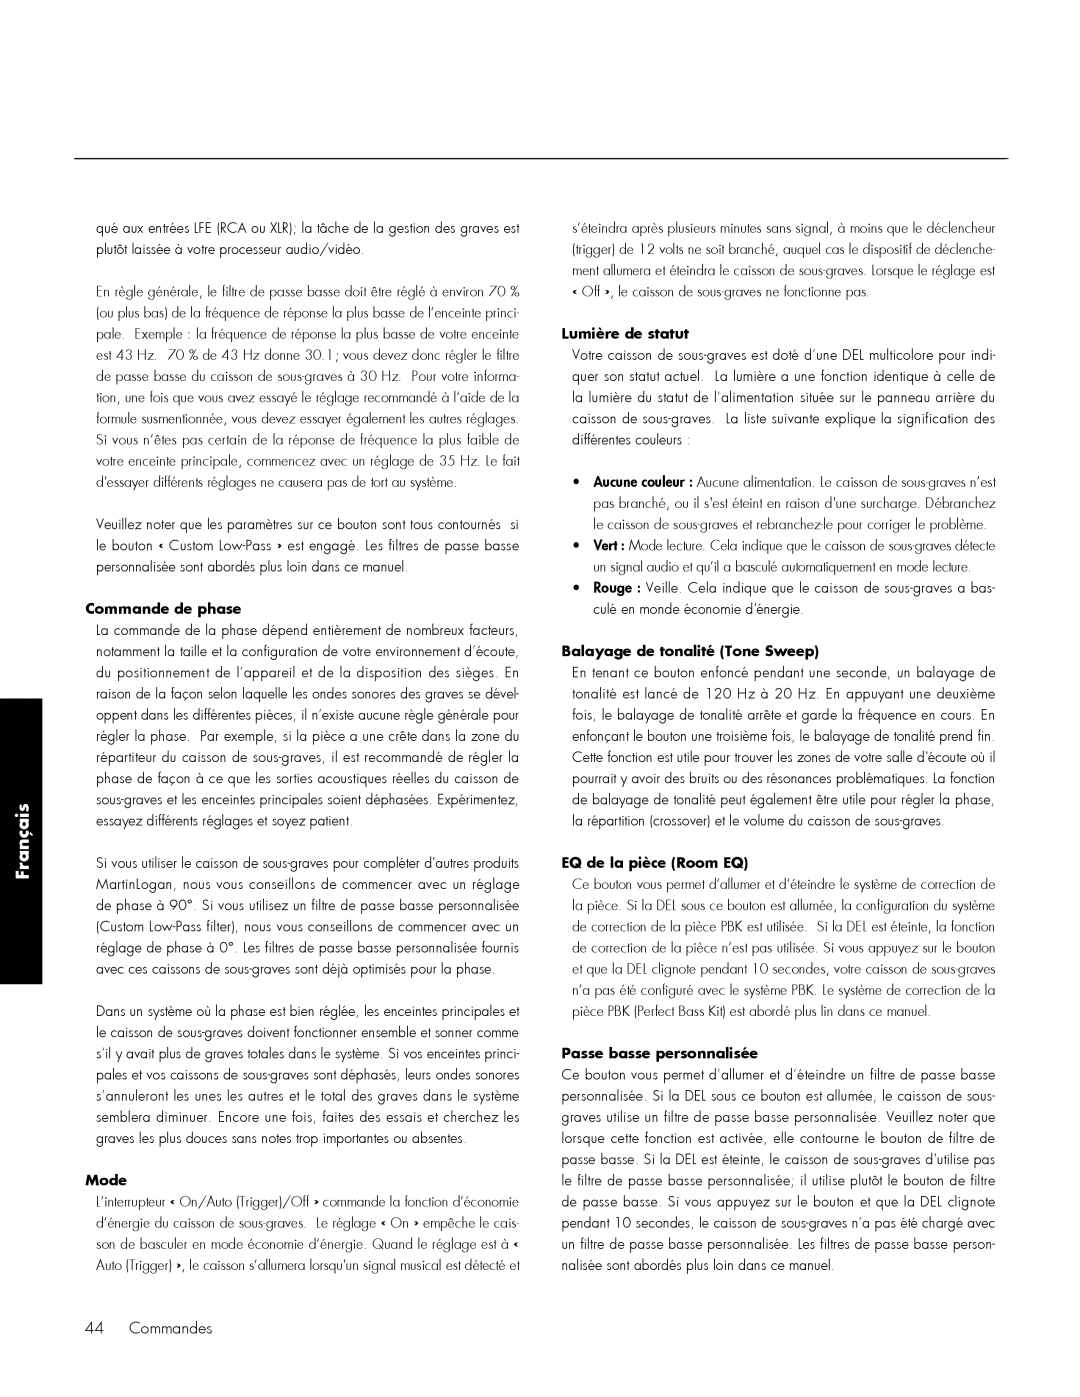 MartinLogan 210, 212 user manual Français, Commande de phase, Mode, Lumière de statut, Balayage de tonalité Tone Sweep 